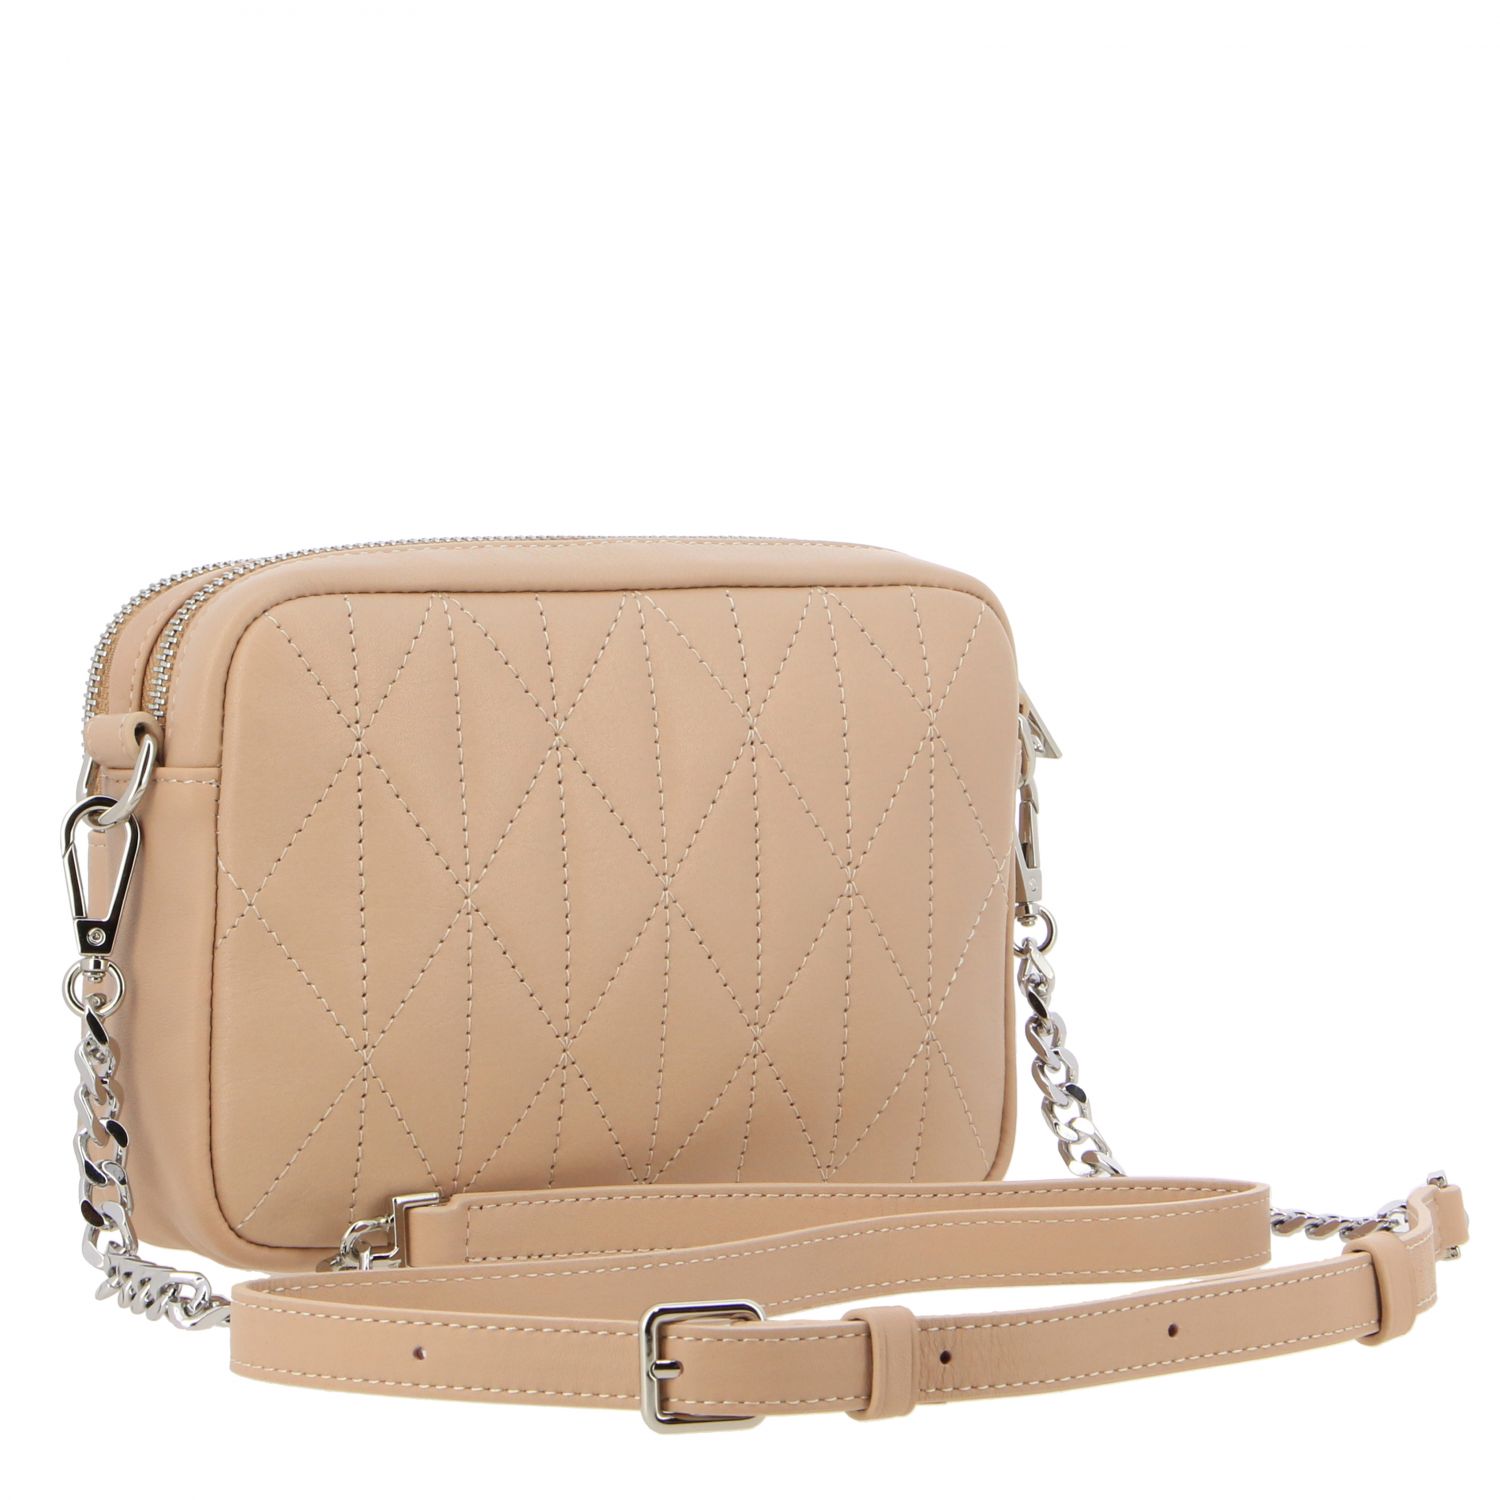 Lancaster Paris Outlet: shoulder bag in quilted leather - Beige | Mini ...